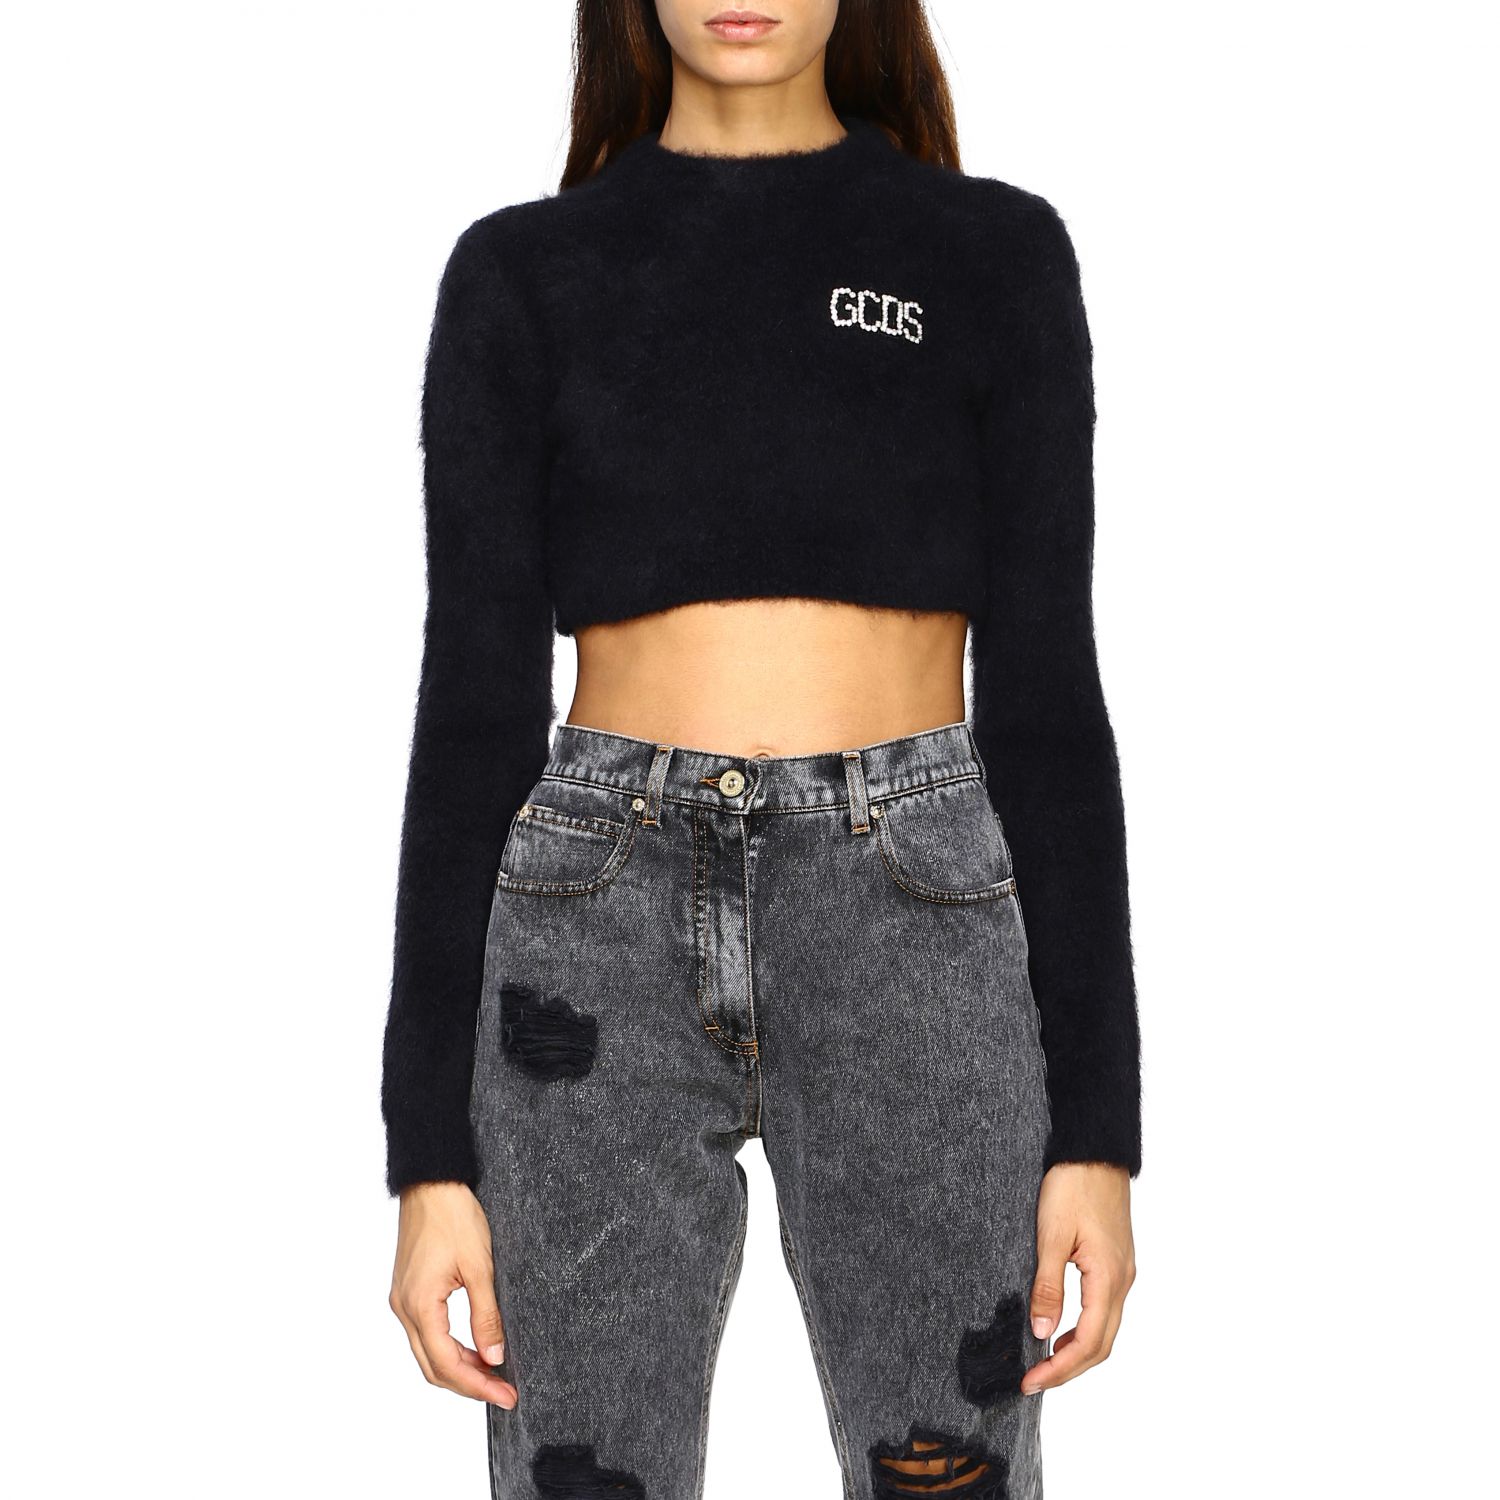 Sweater Gcds: Sweater women Gcds black 1